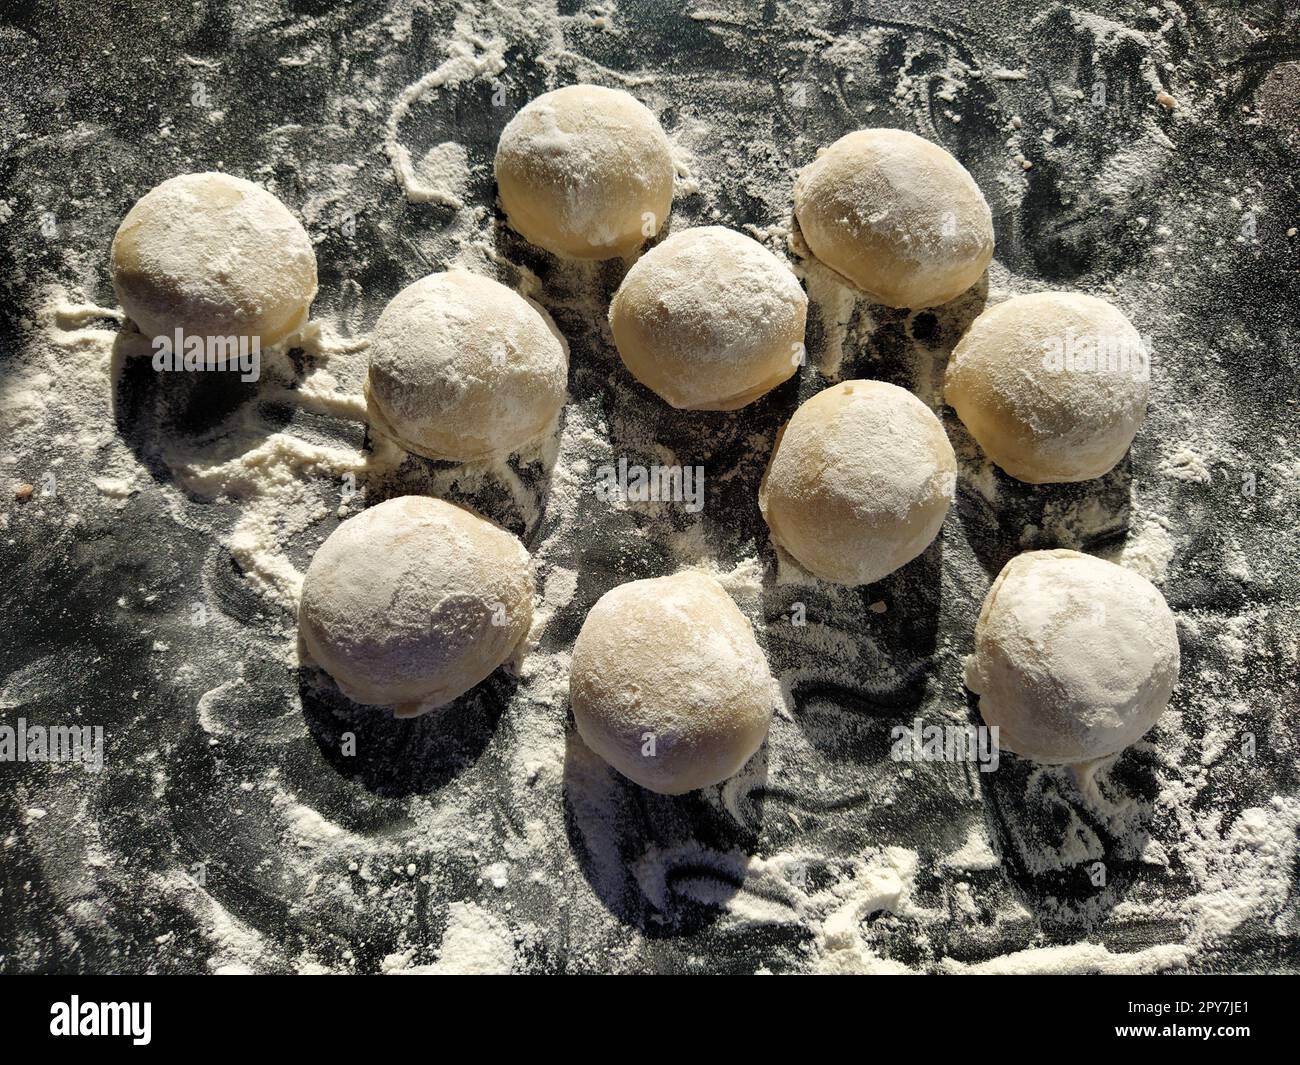 Pezzi rotondi di pasta frolla per preparare biscotti o pan di zenzero. Panini crudi o gnocchi con farina sparsi su sfondo nero Foto Stock